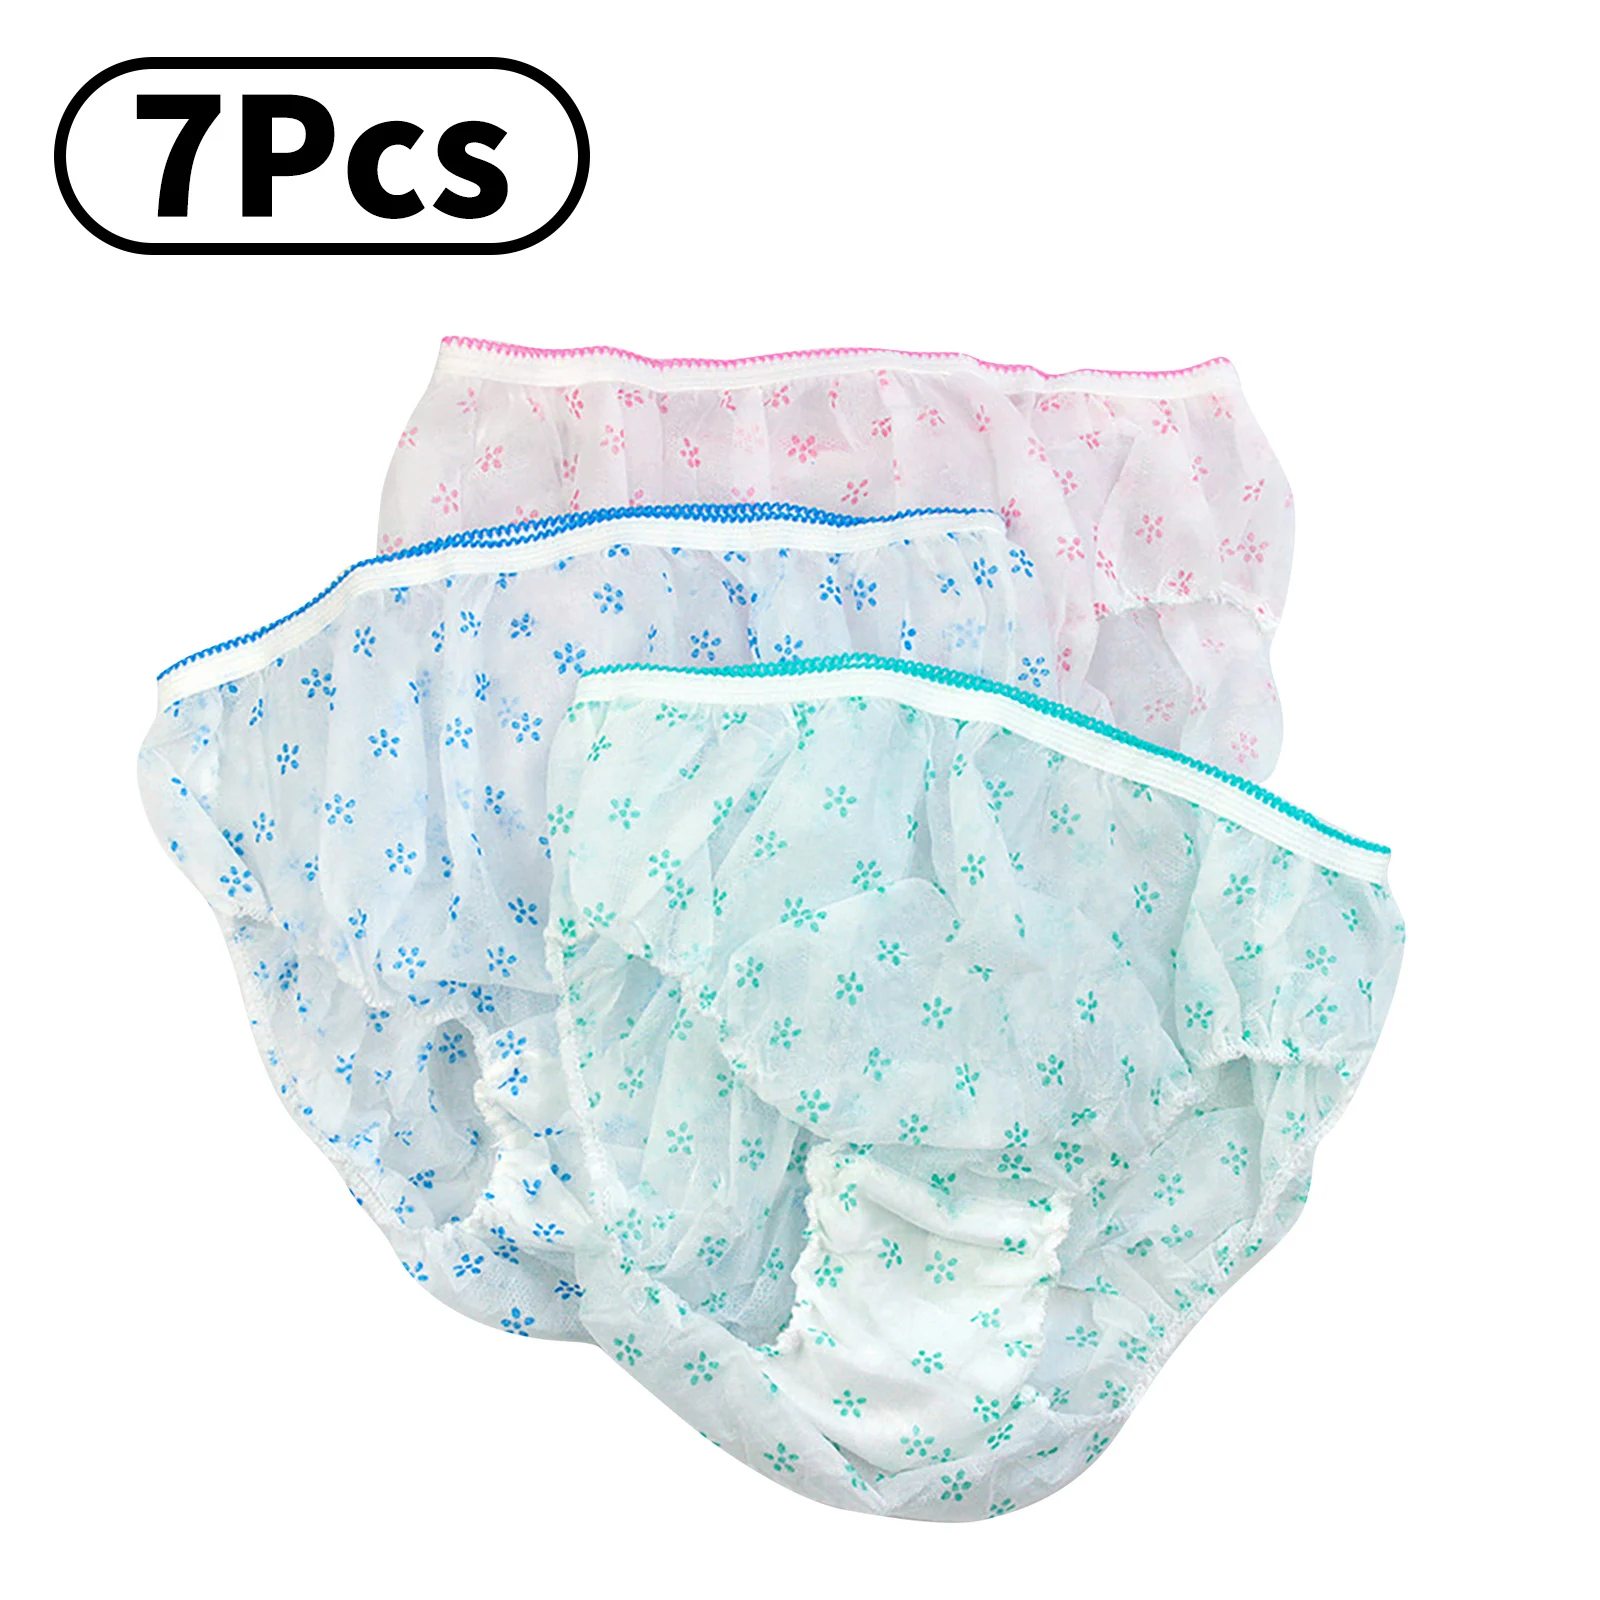 7Pcs Maternity Disposable Panties Pregnant Women Underwear Non-woven  Postpartum Confinement Cotton Bottom Paper Panties - AliExpress